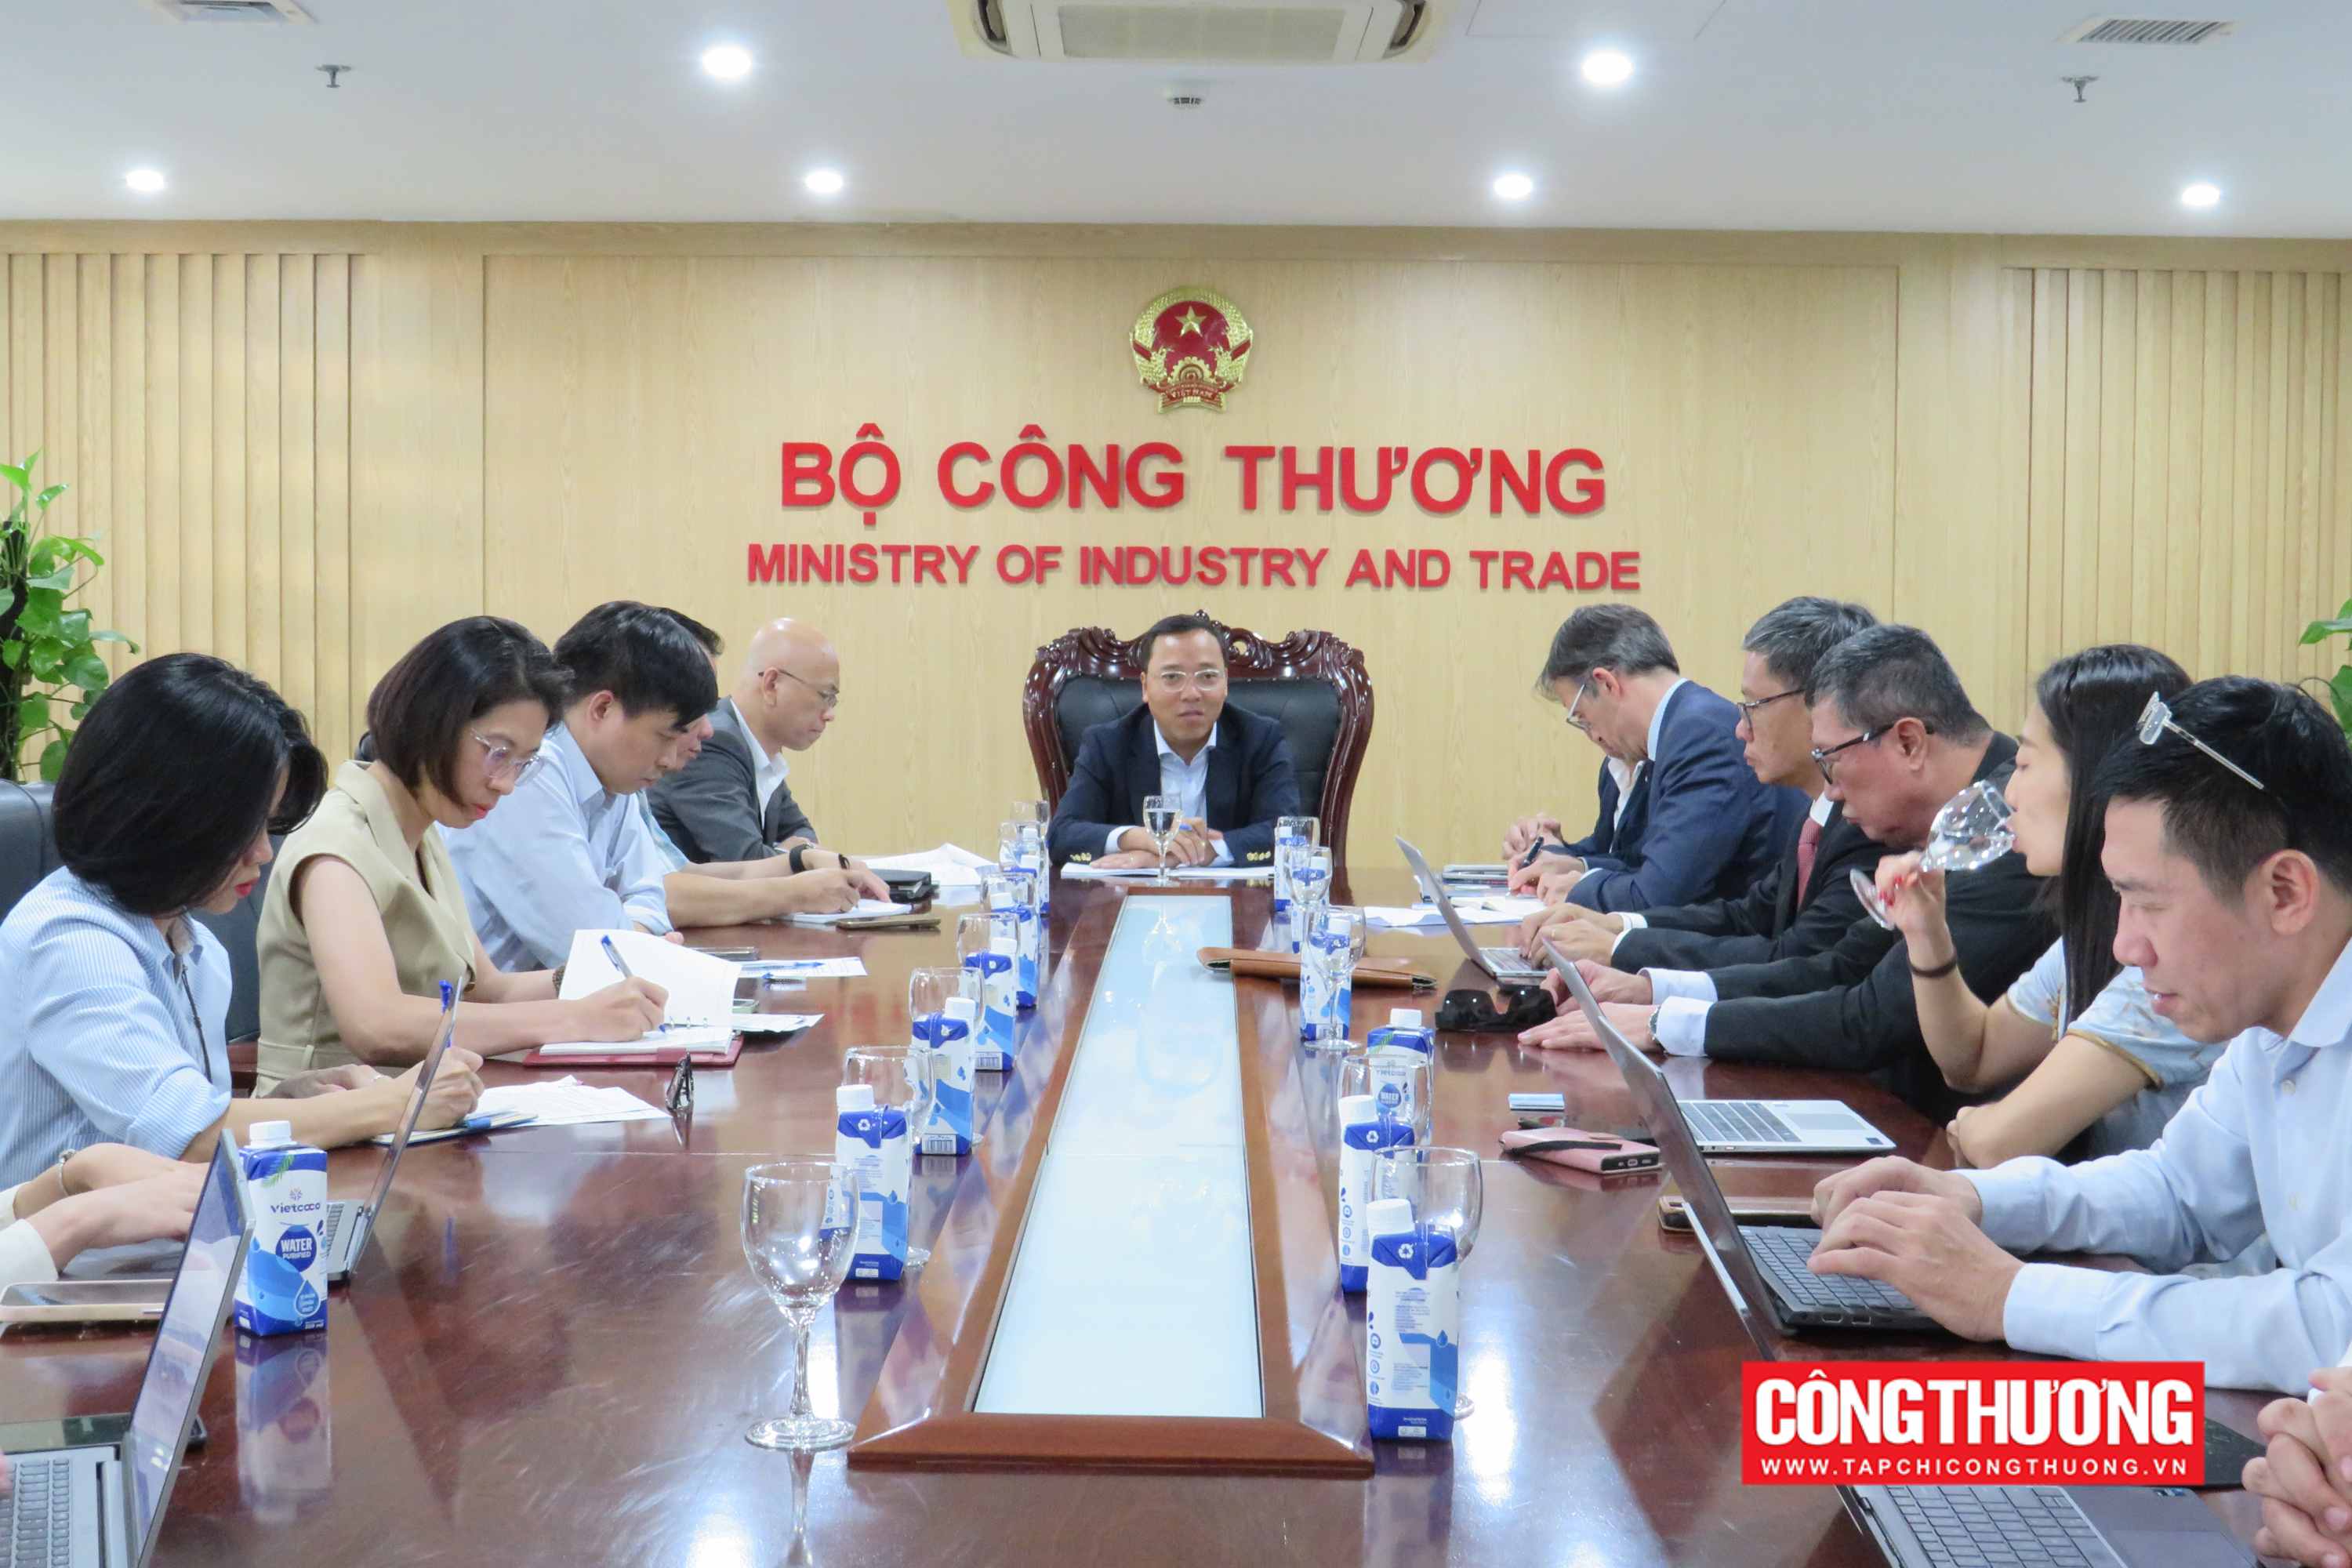 FIATA mong muốn tăng cường hợp tác thu hút đầu tư, phát triển lĩnh vực logistics Việt Nam